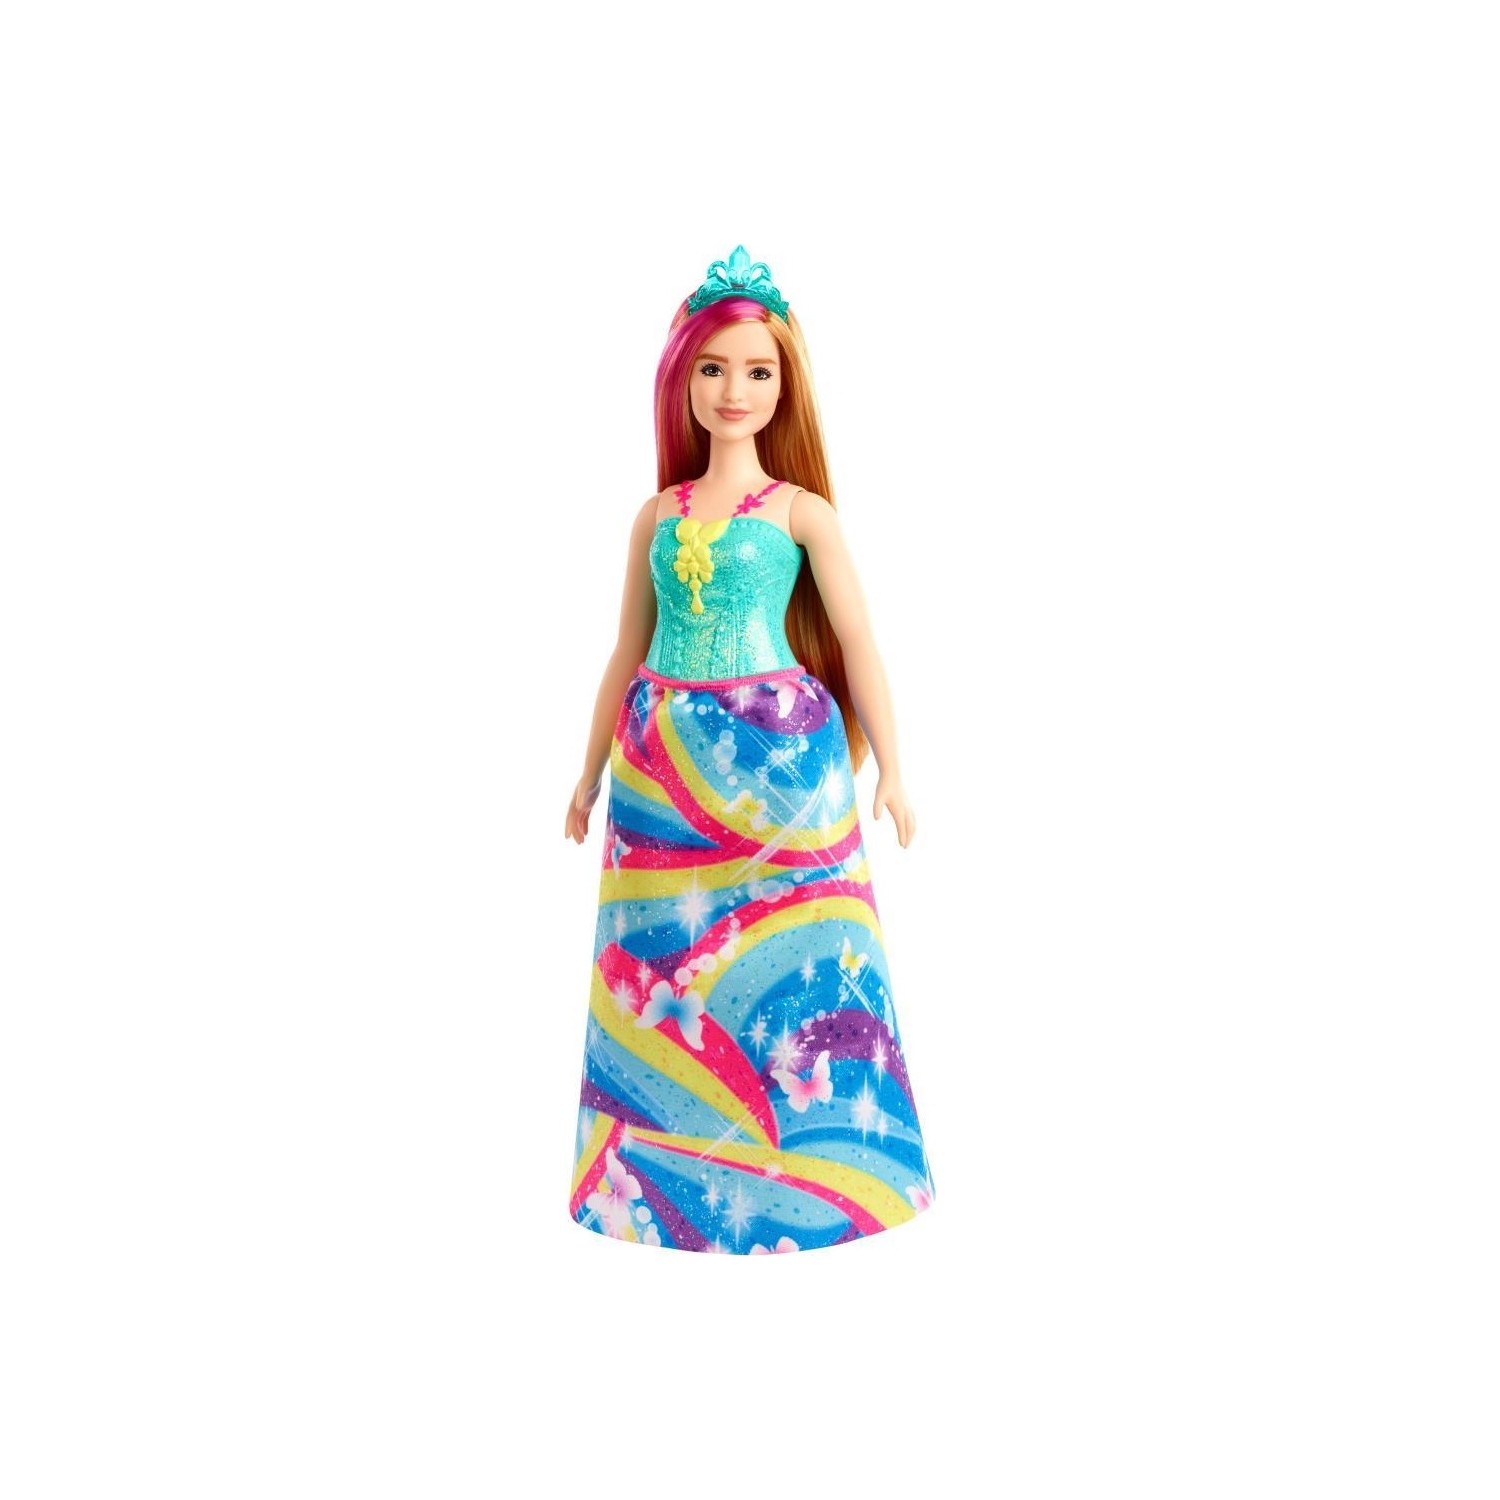 Кукла Barbie Dreamtopia Princess Dolls GJK16 кукла barbie dreamtopia princess dolls fjc94